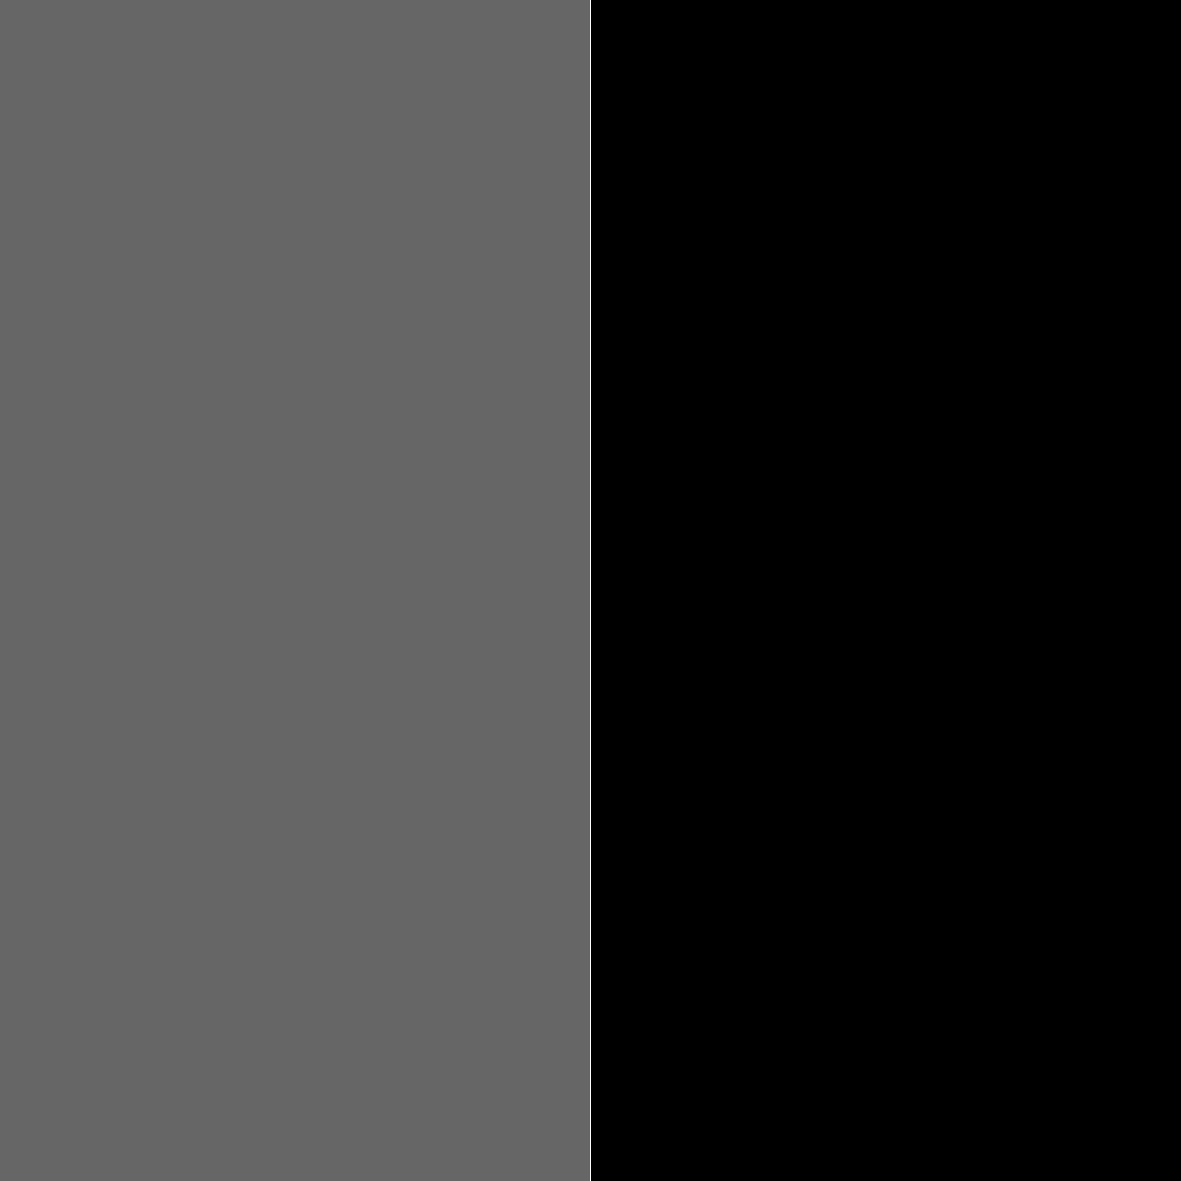 тускло-серый(пепельный-меланж)/черный_666666/000000